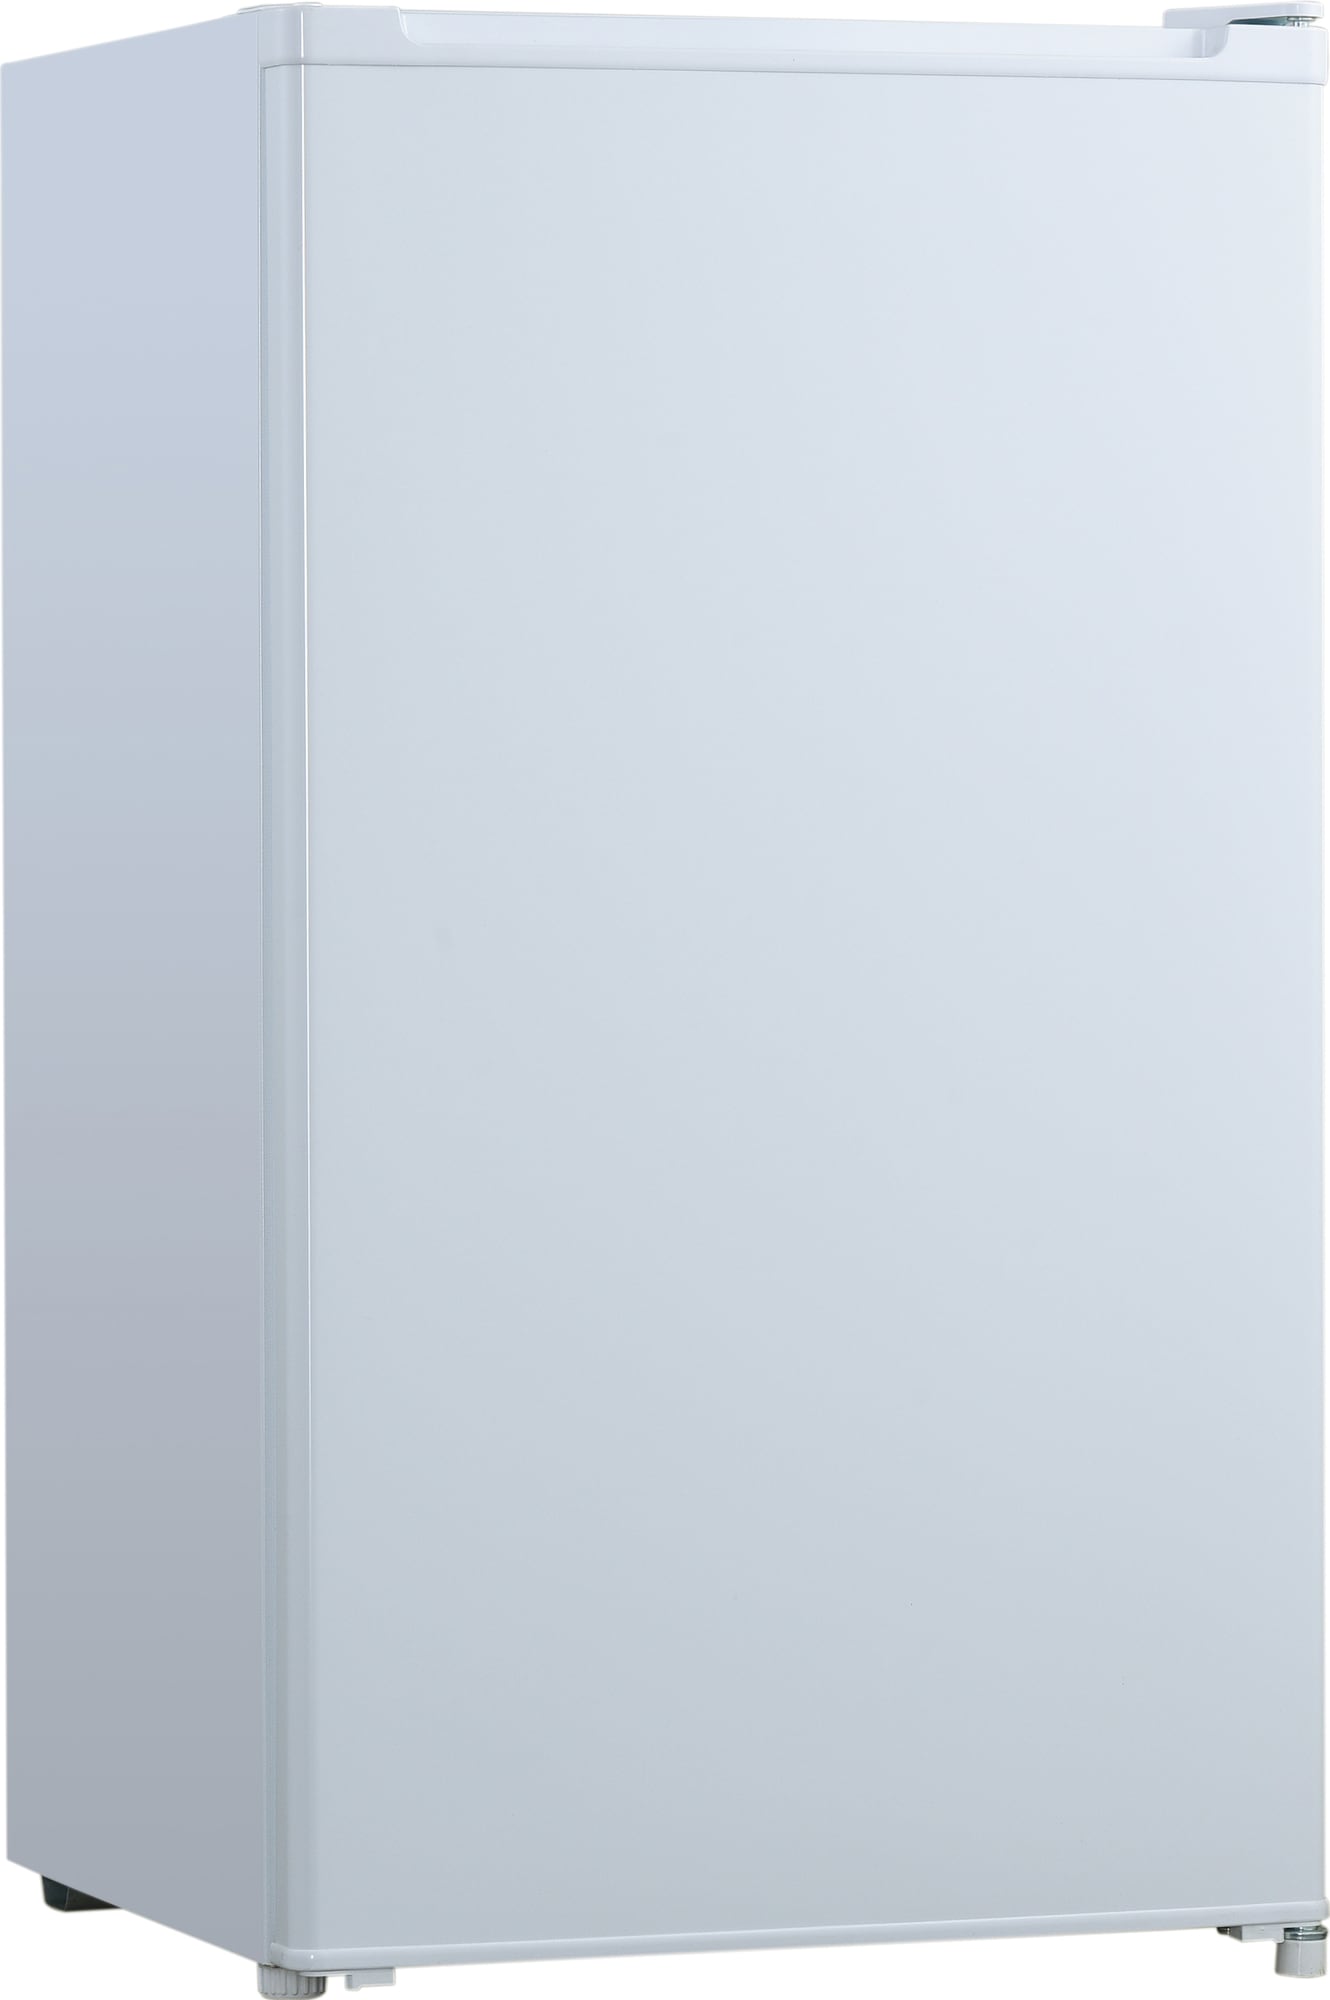 Logik jääkaappi LUL48W20E - Gigantti verkkokauppa